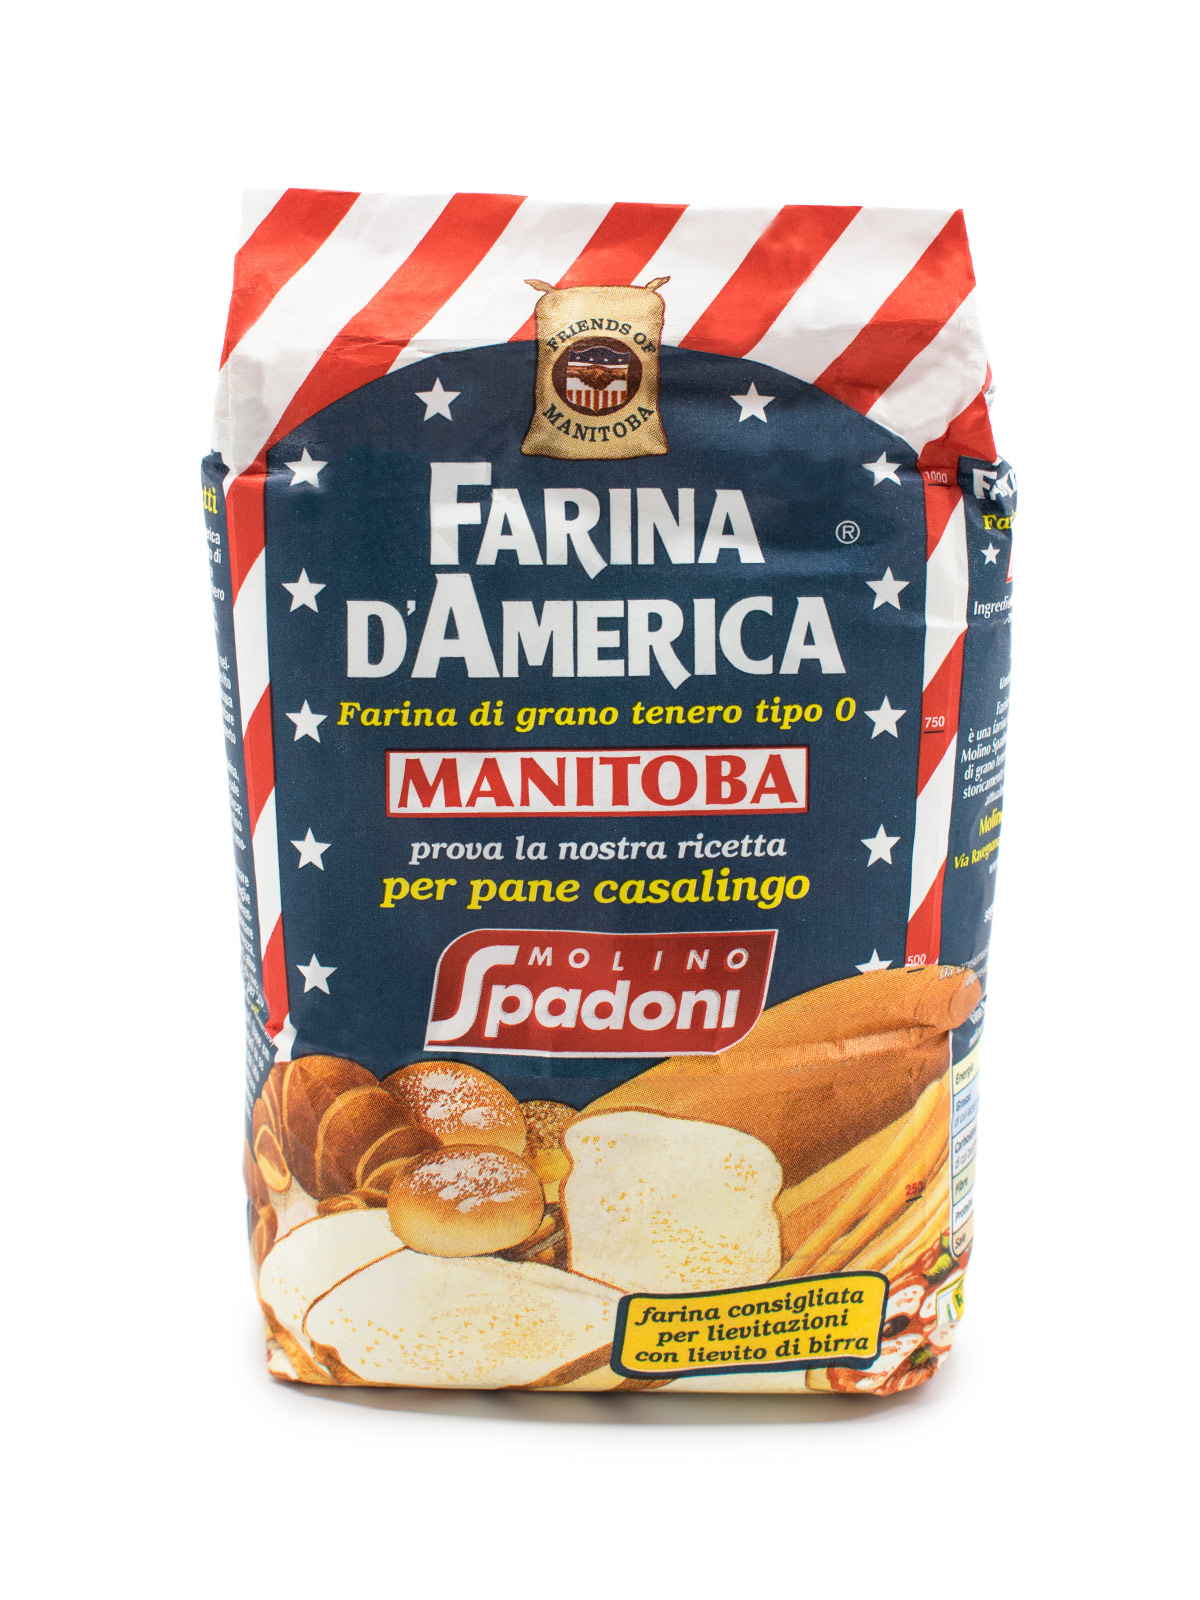 Farina d'America Manitoba integrale